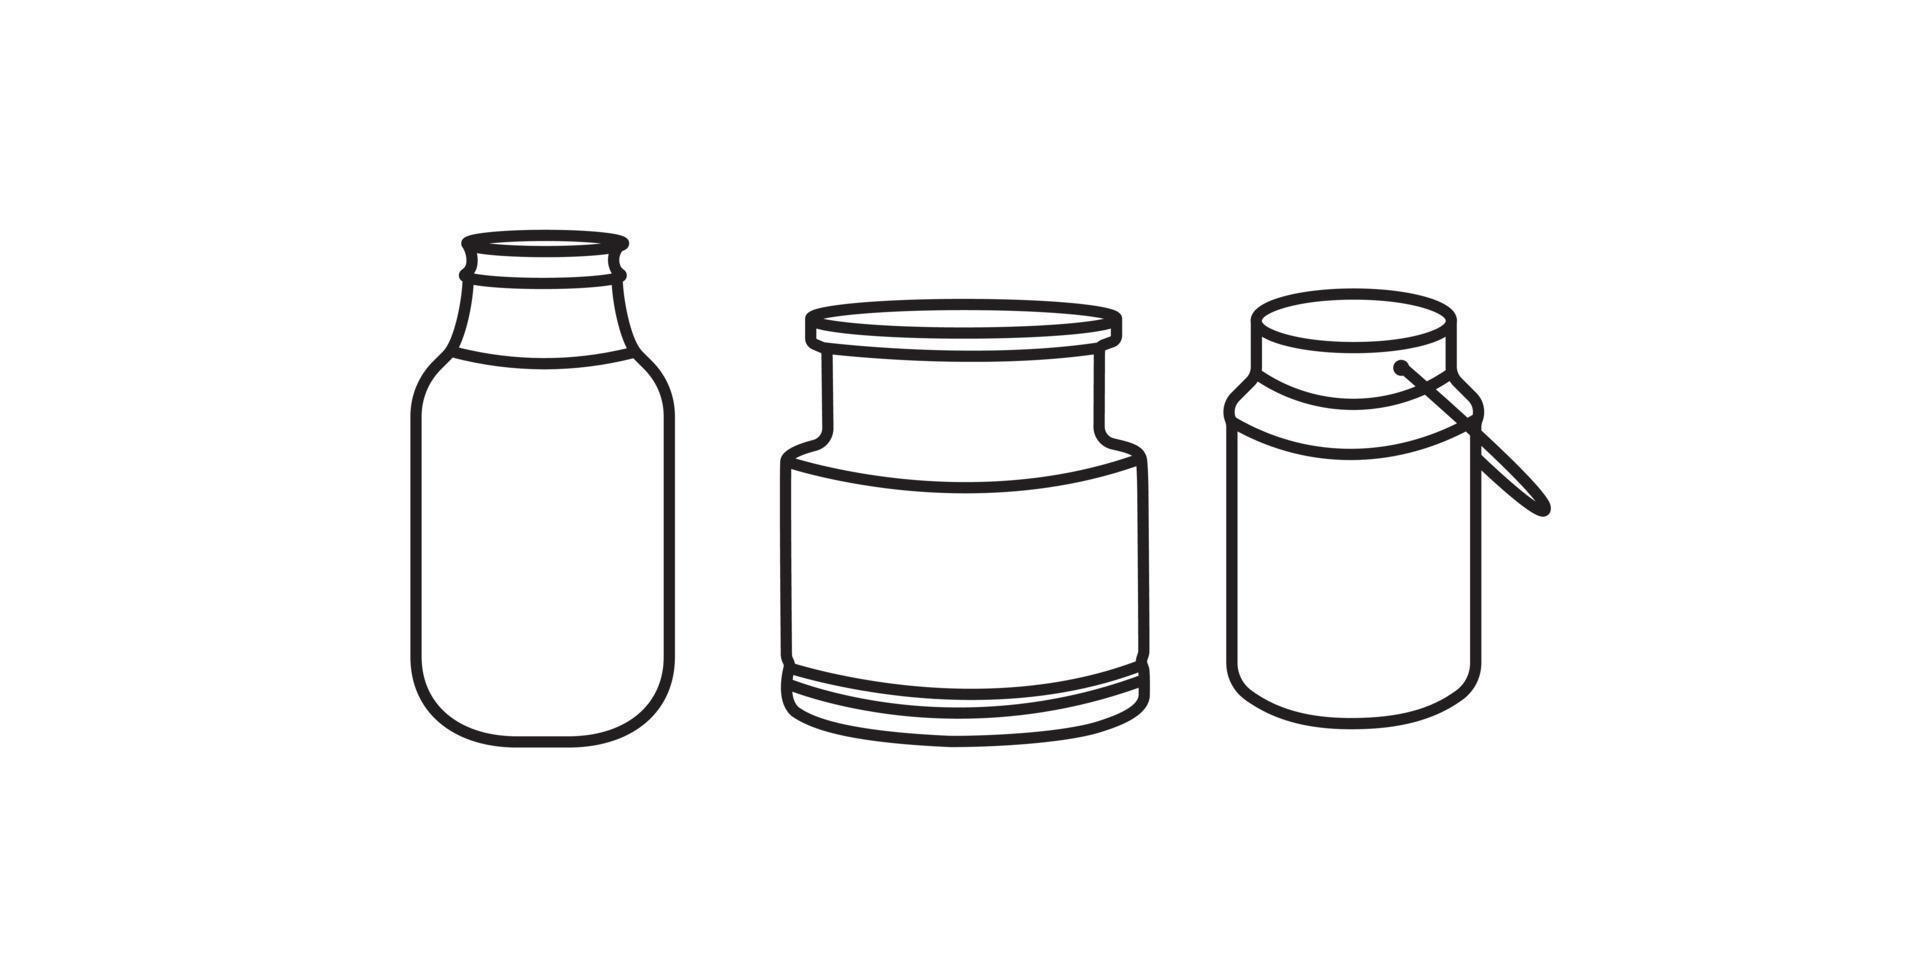 mjölk behållare eller churn i tre former. vektor illustration